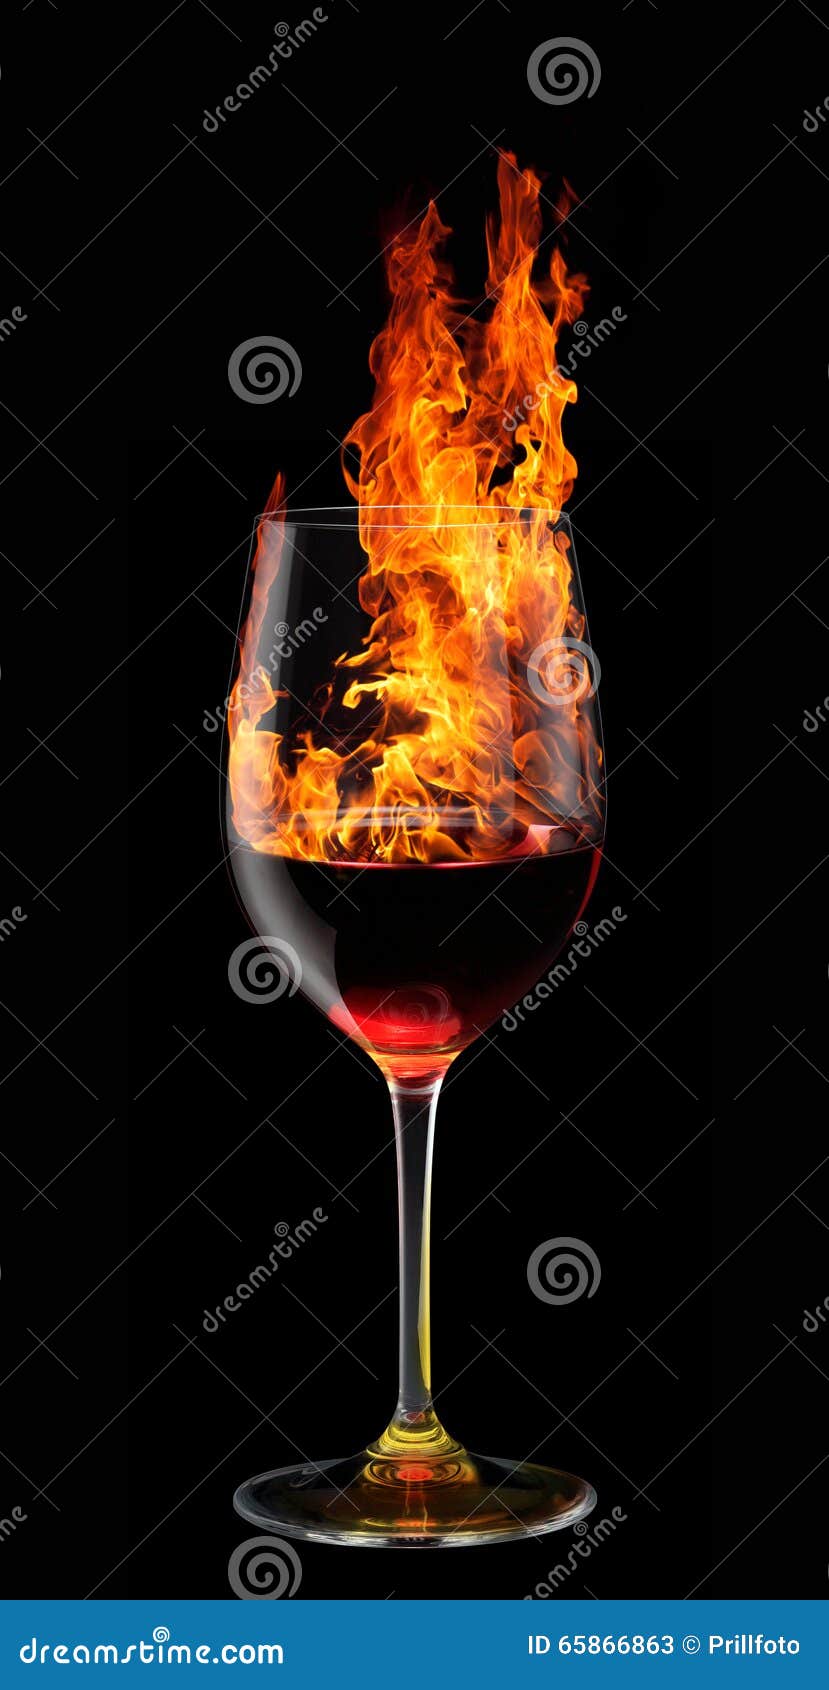 Вин вин сгорел. Горящий стакан. Горящее стекло. Огонь и вино. Горящий бокал с вином.